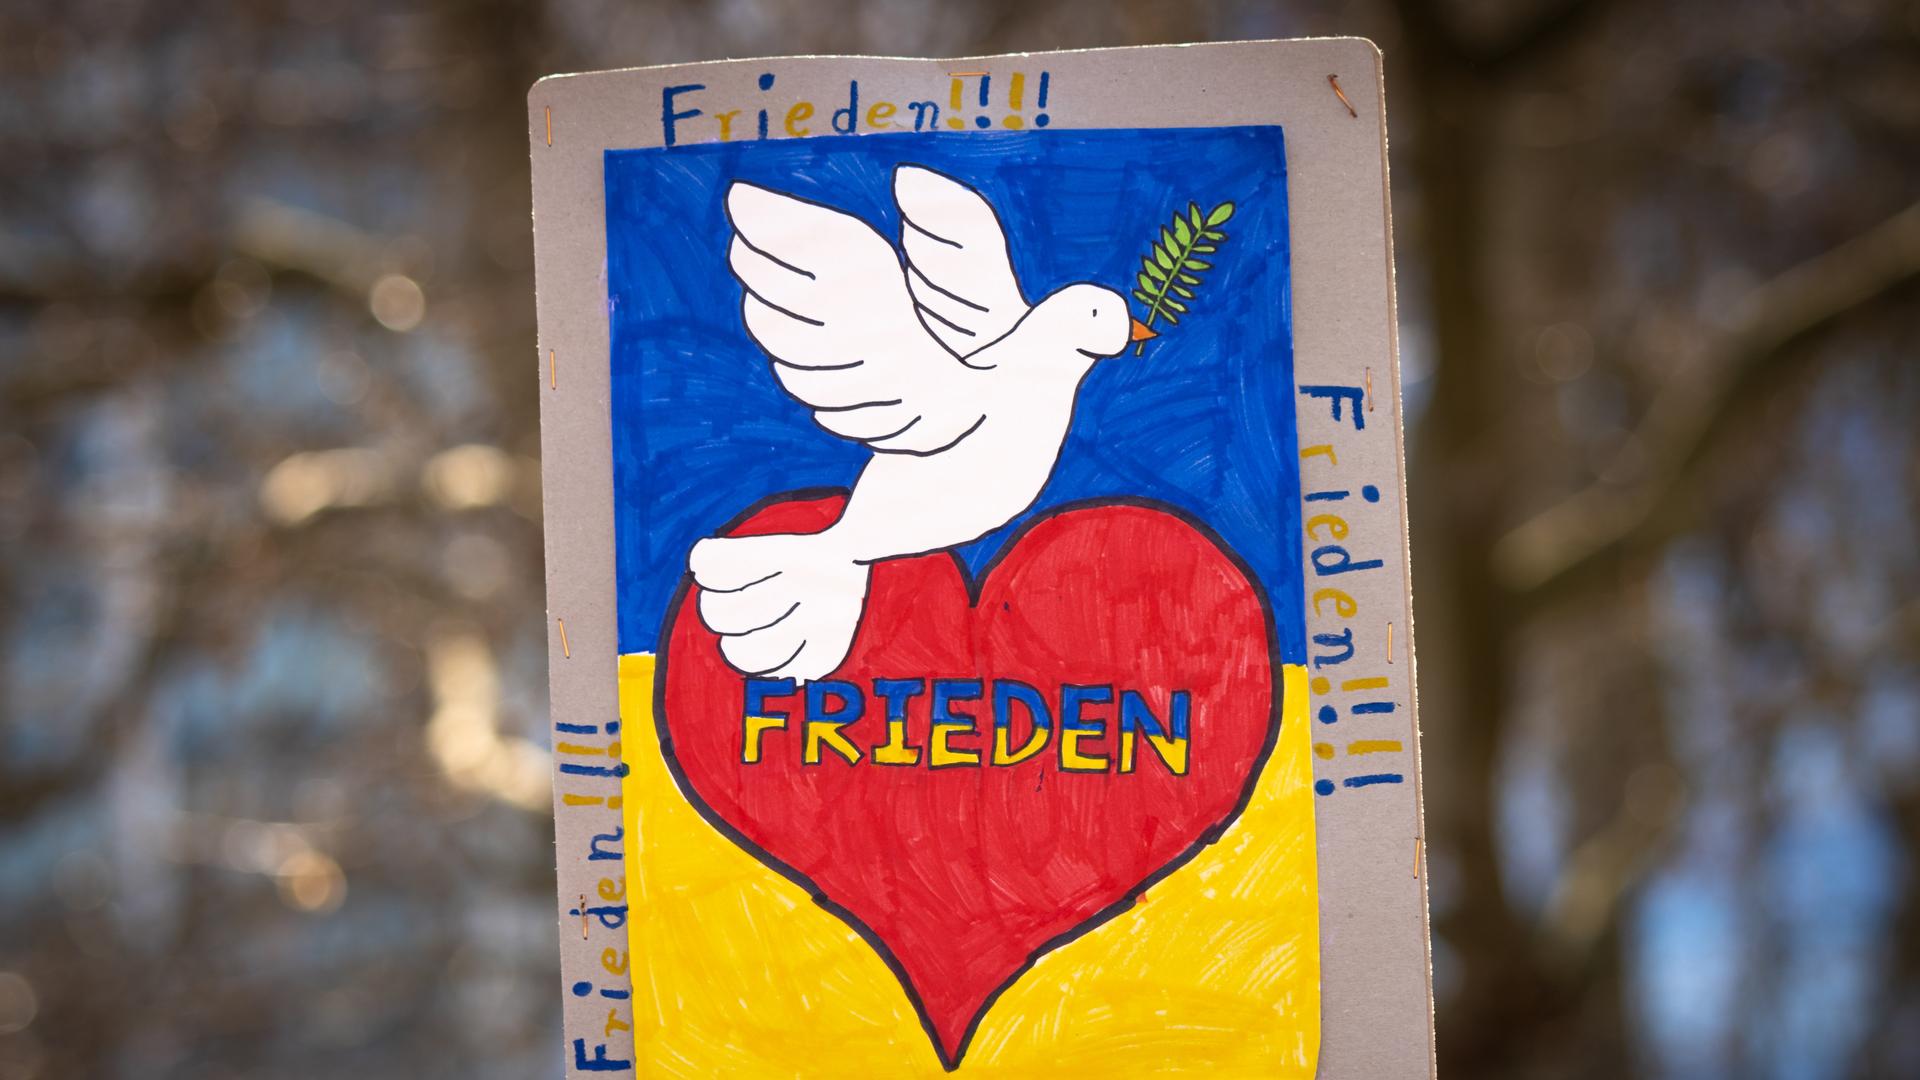 "FRIEDEN" steht auf einem Plakat. Außerdem ist ein rotes Herz und eine weiße Taube darauf zu sehen.